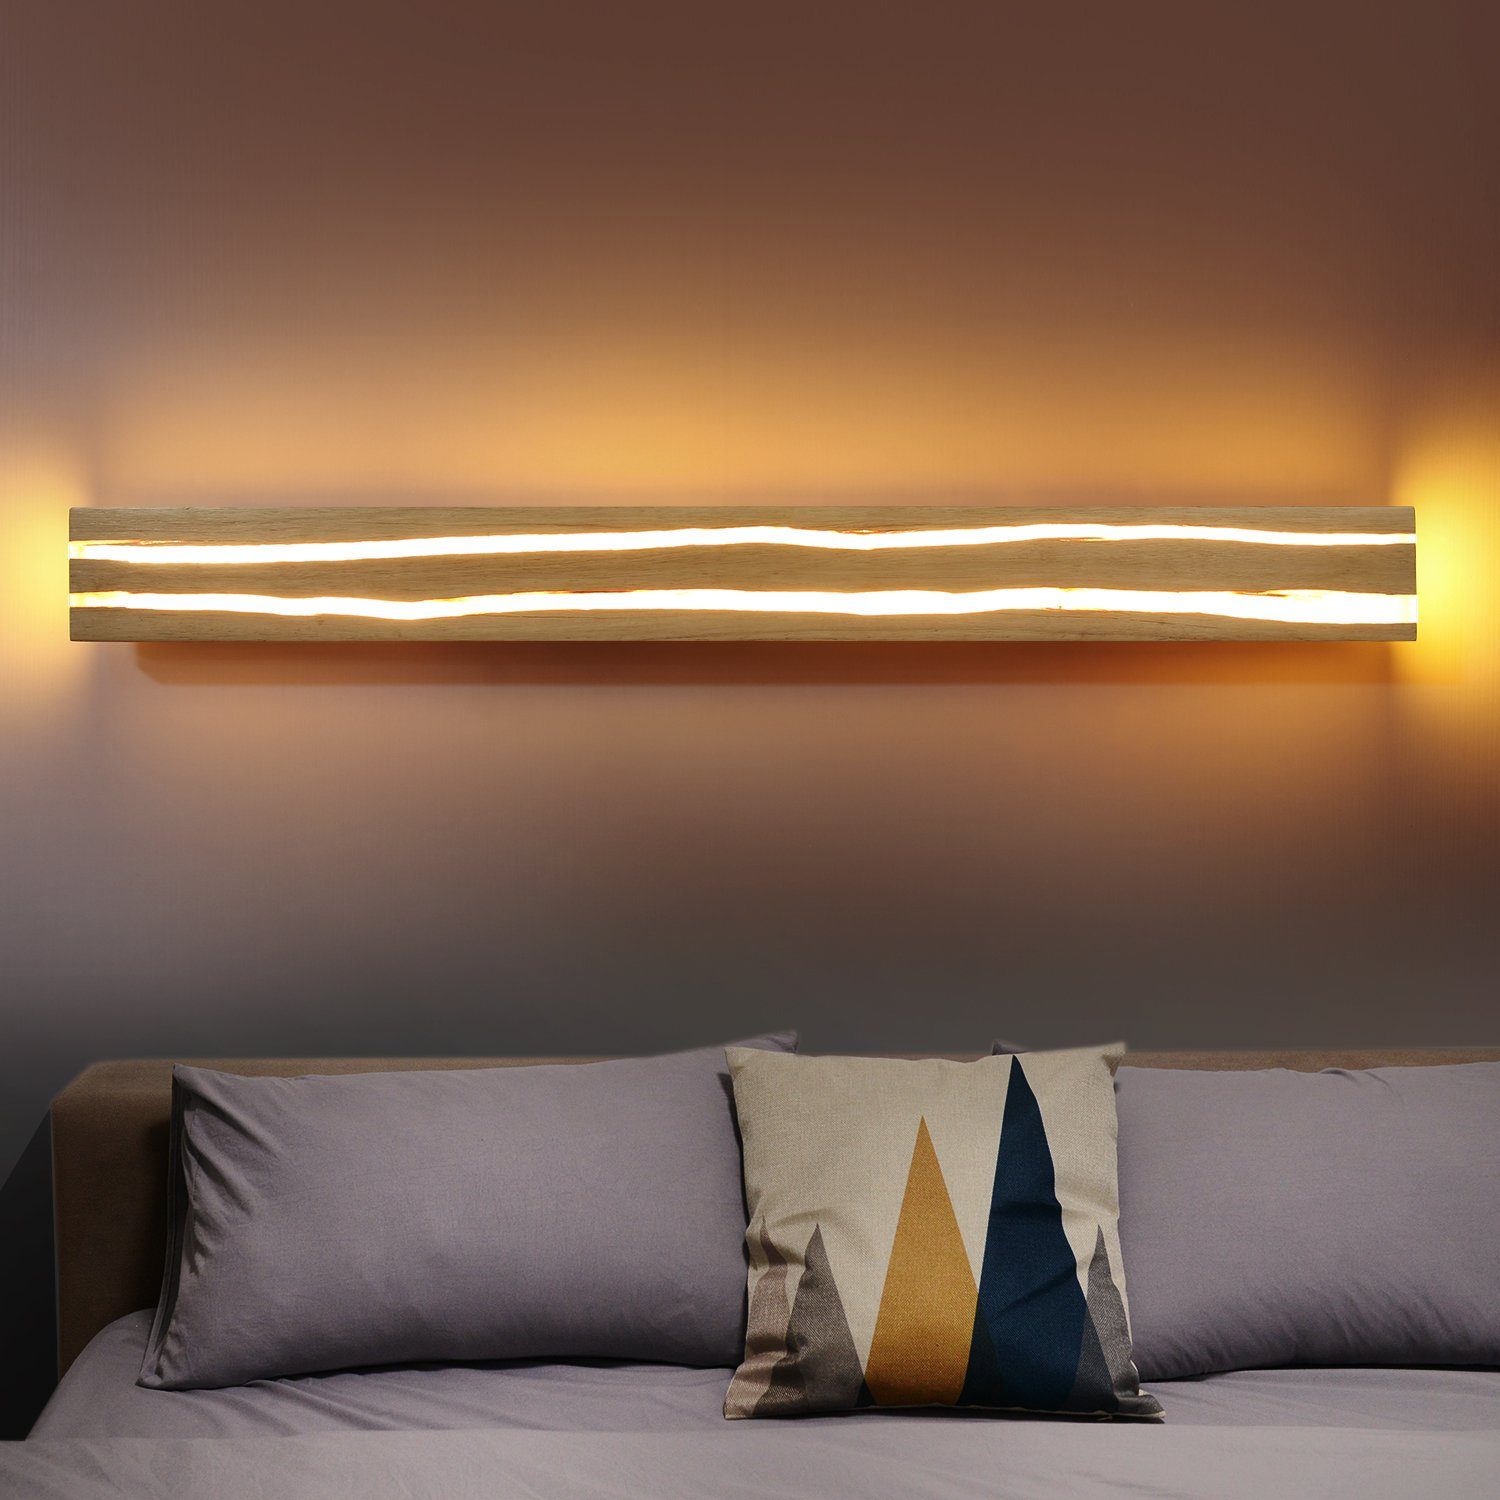 ZMH LED Wandleuchte Holz fest integriert, Wohnzimmer, Warmweiß Flur LED Treppe Nachtlampe Beleuchtung 18W